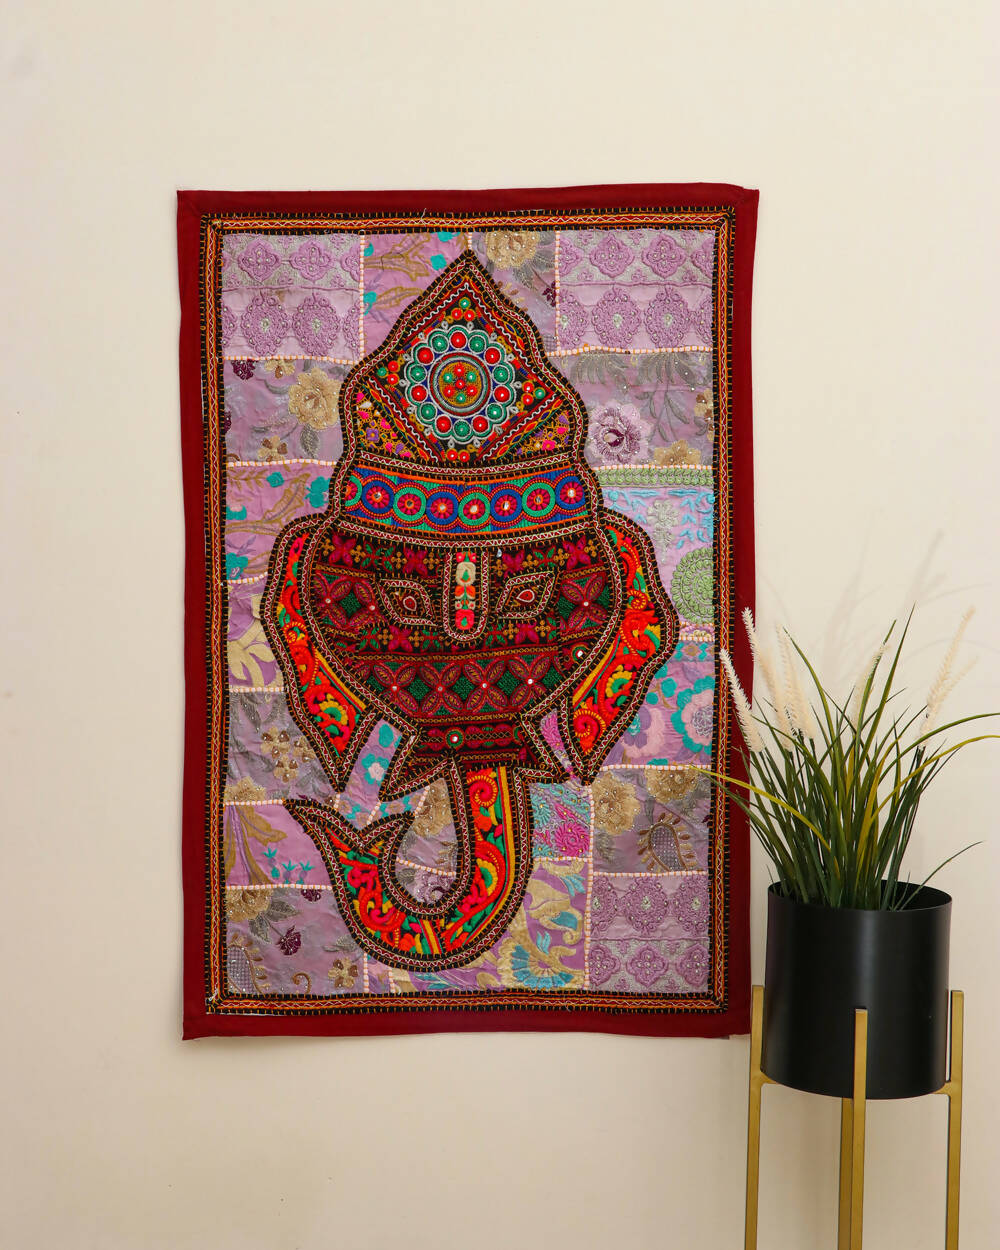 Ganesha embroidered wall decor